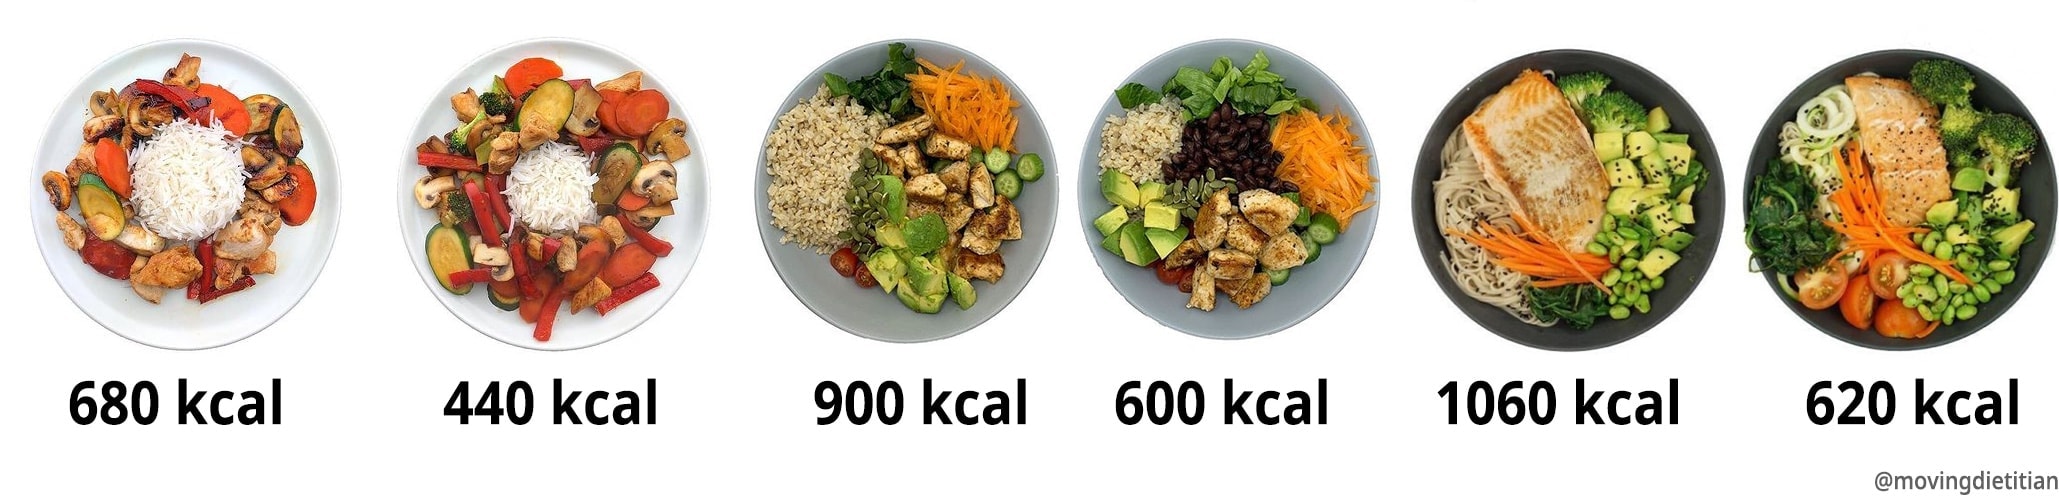 usporedba kalorija u obrocima